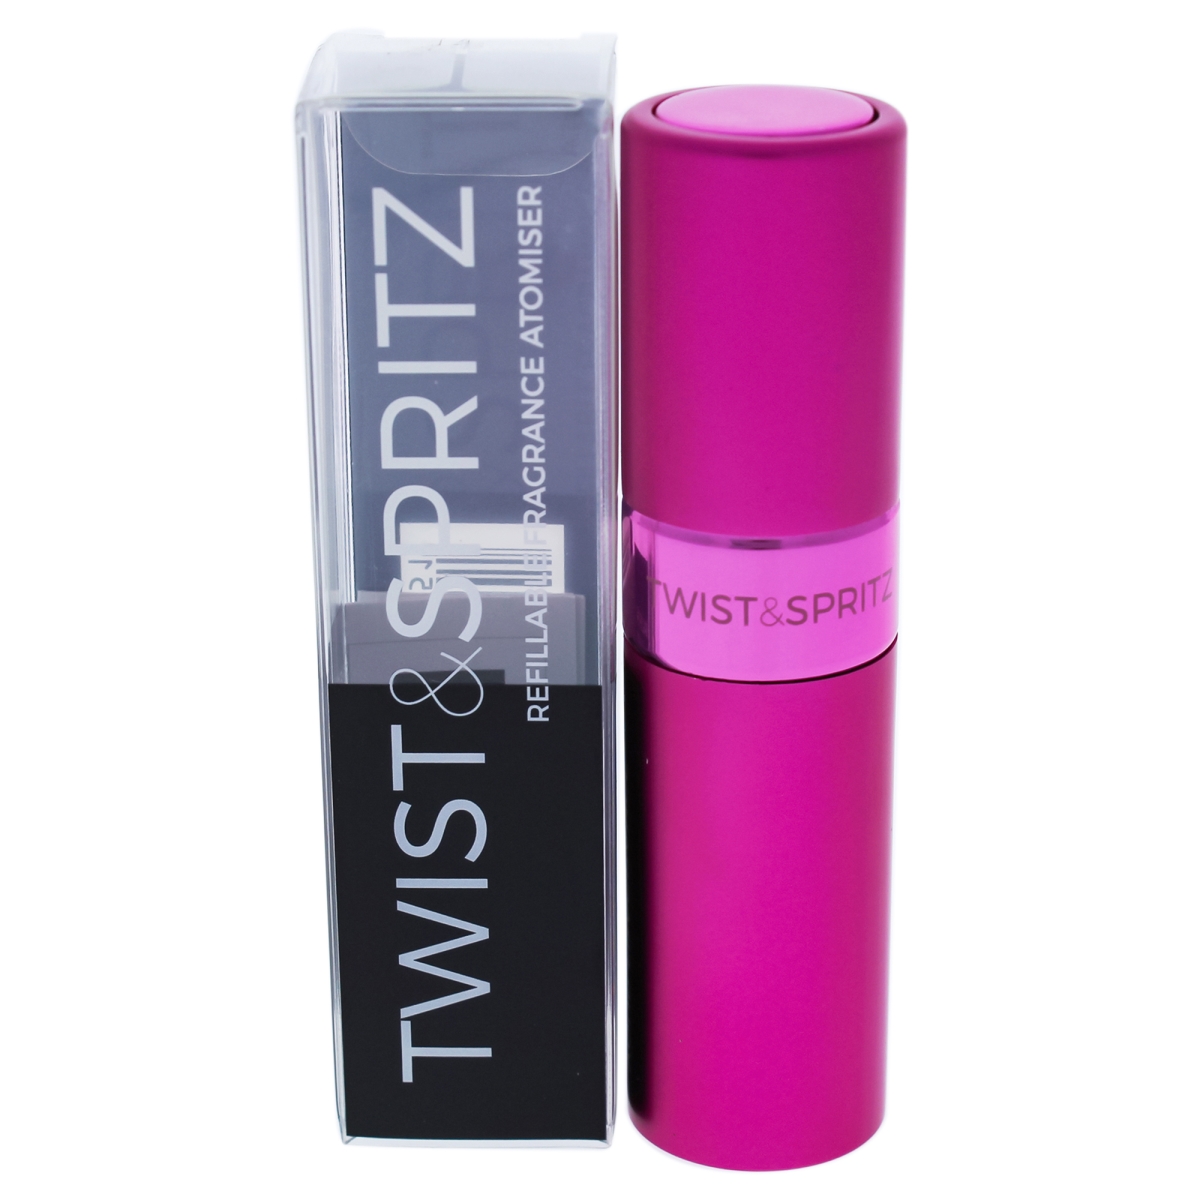 I0090999 Atomiser Refillable Spray For Women - Hot Pink - 8 Ml